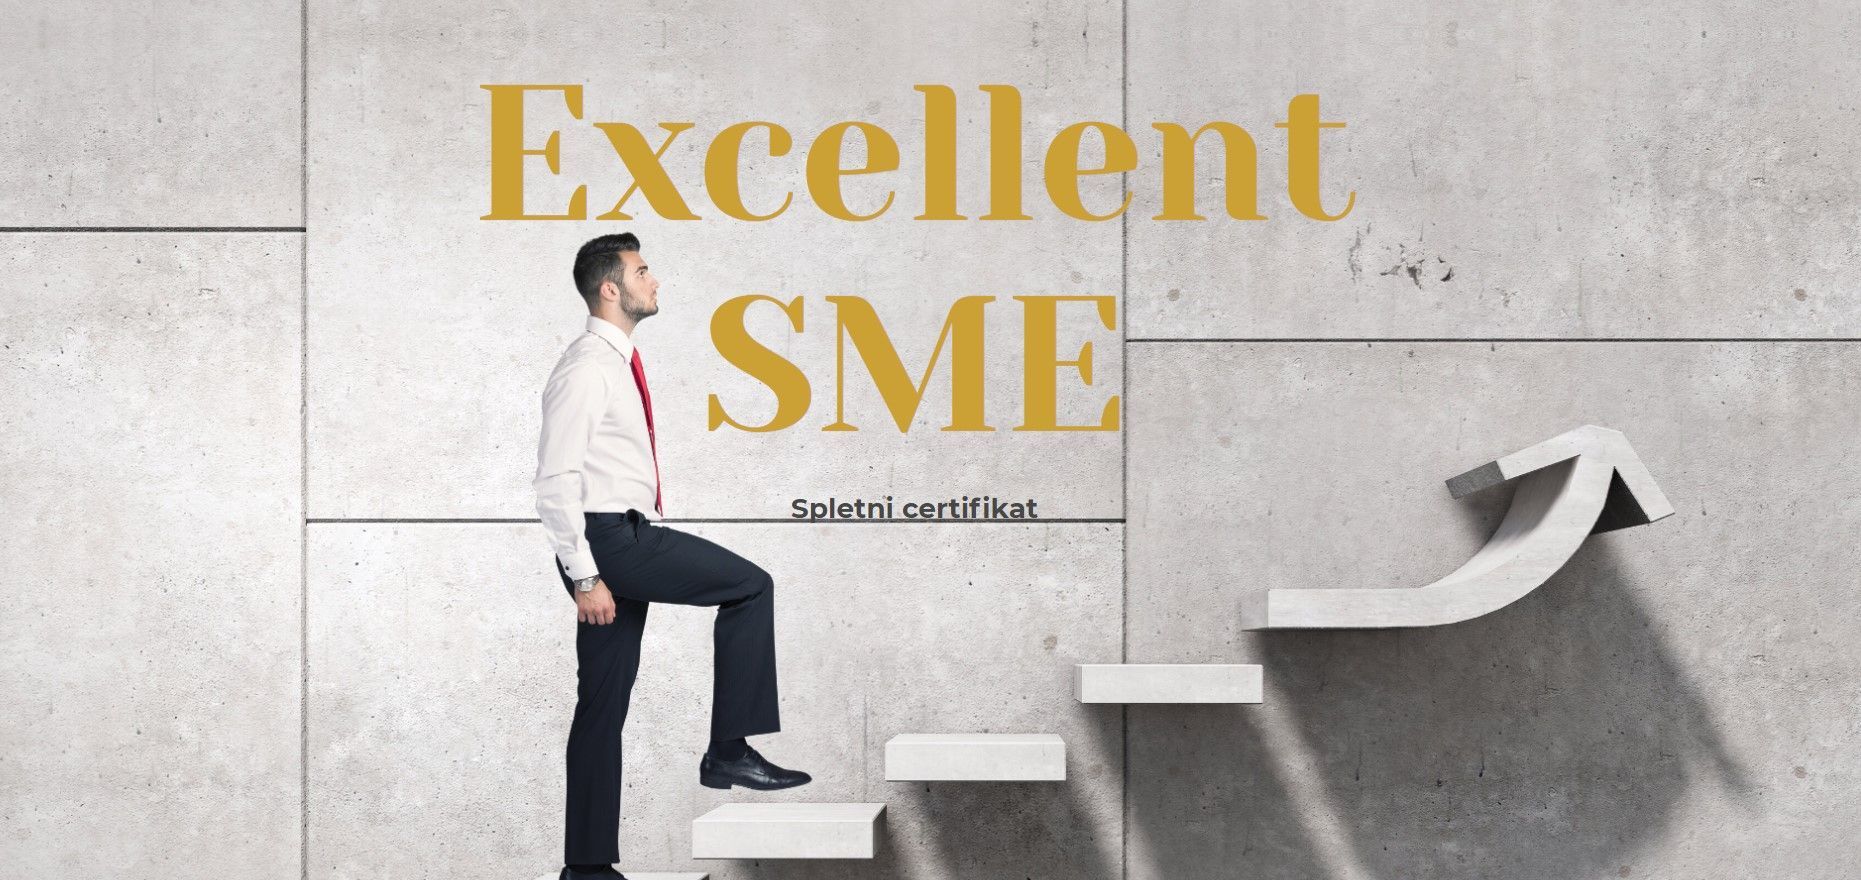 Pridobitev certifikata GZS Excellent SME